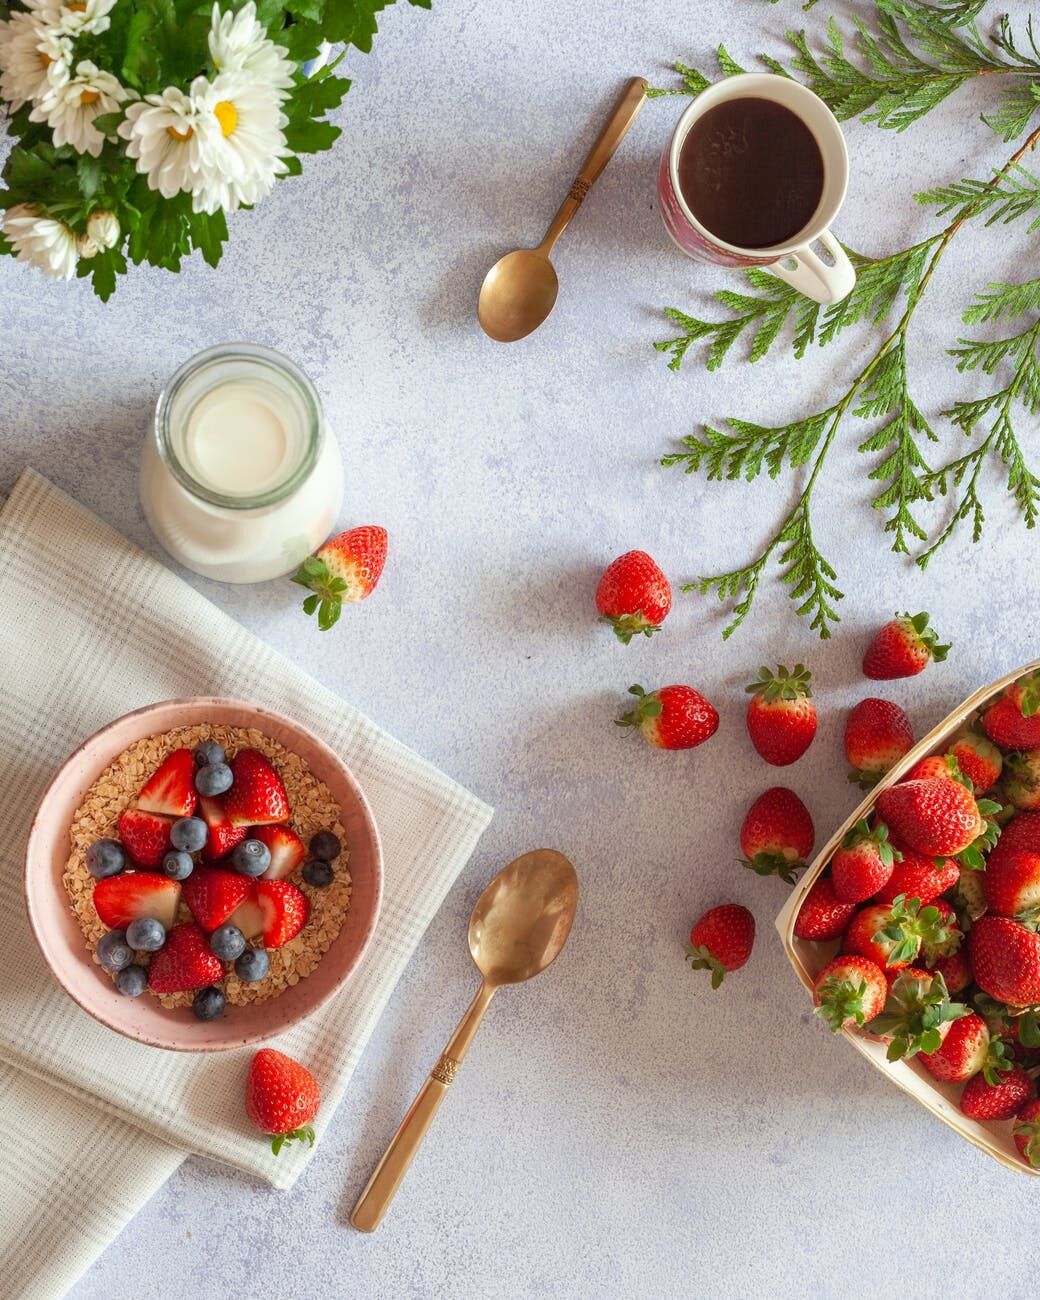 Healthy porridge with berries